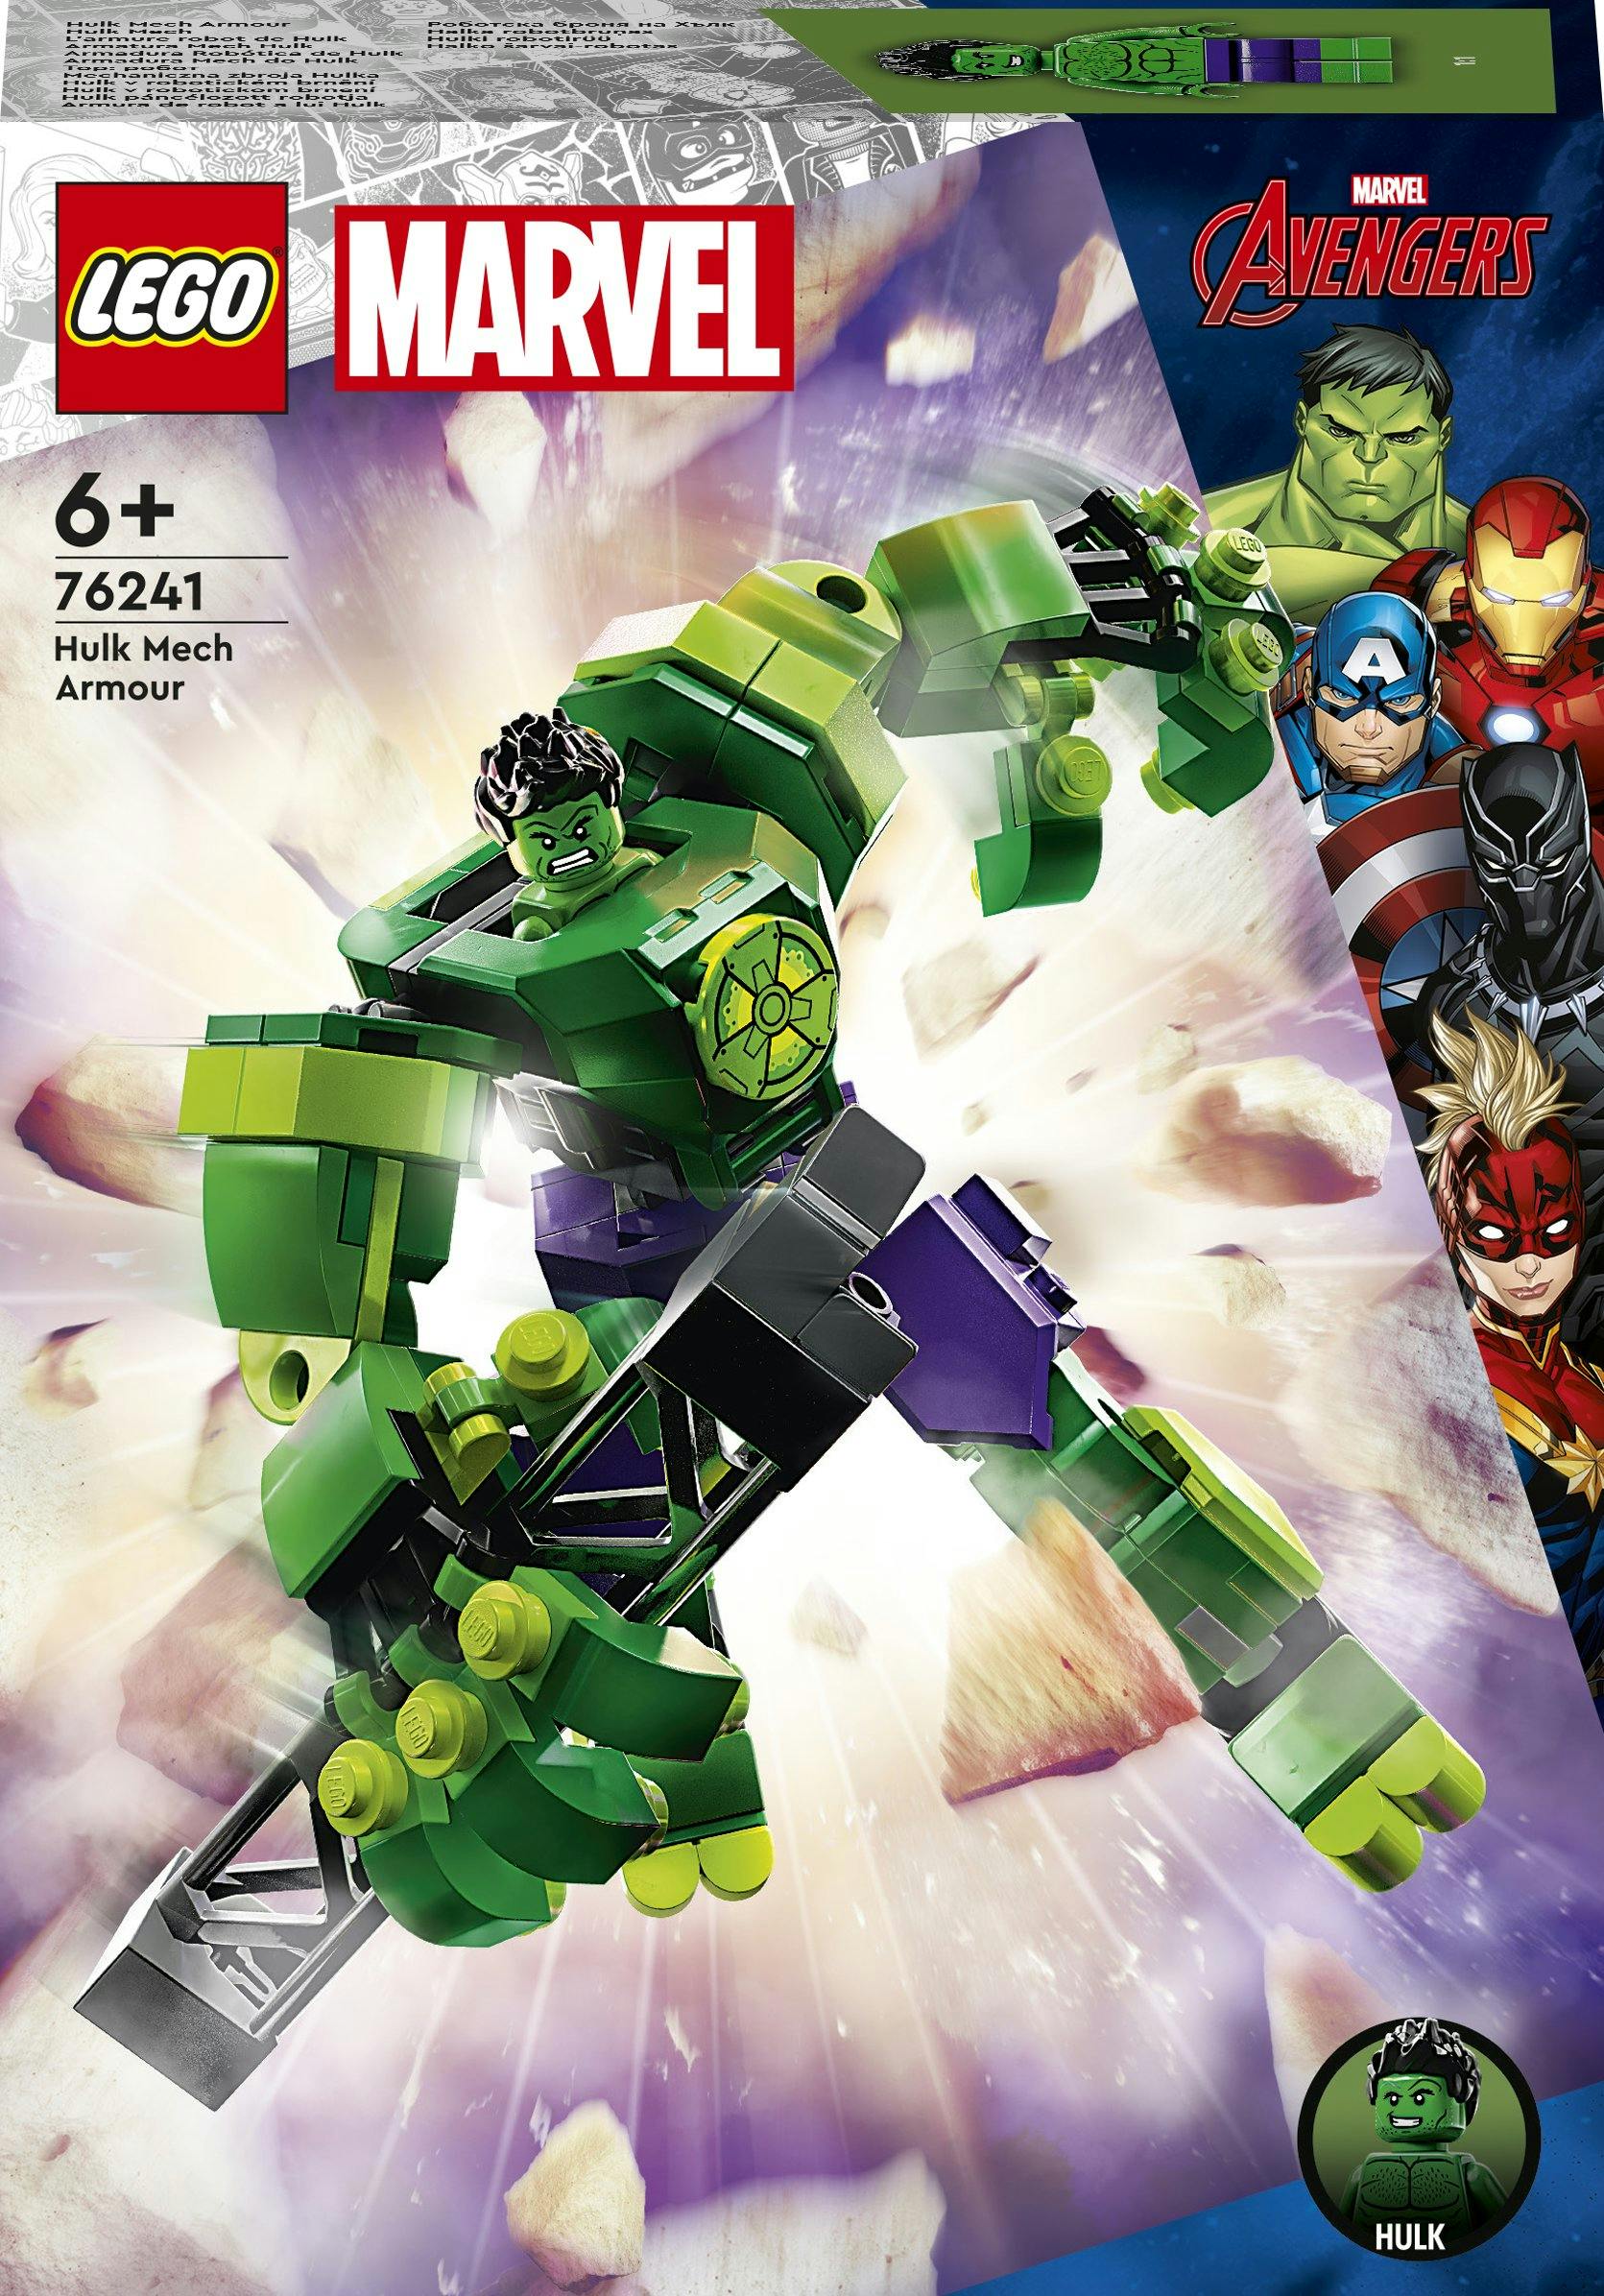 LEGO Marvel Avengers Marvel Hulk Mechapantser (76241)